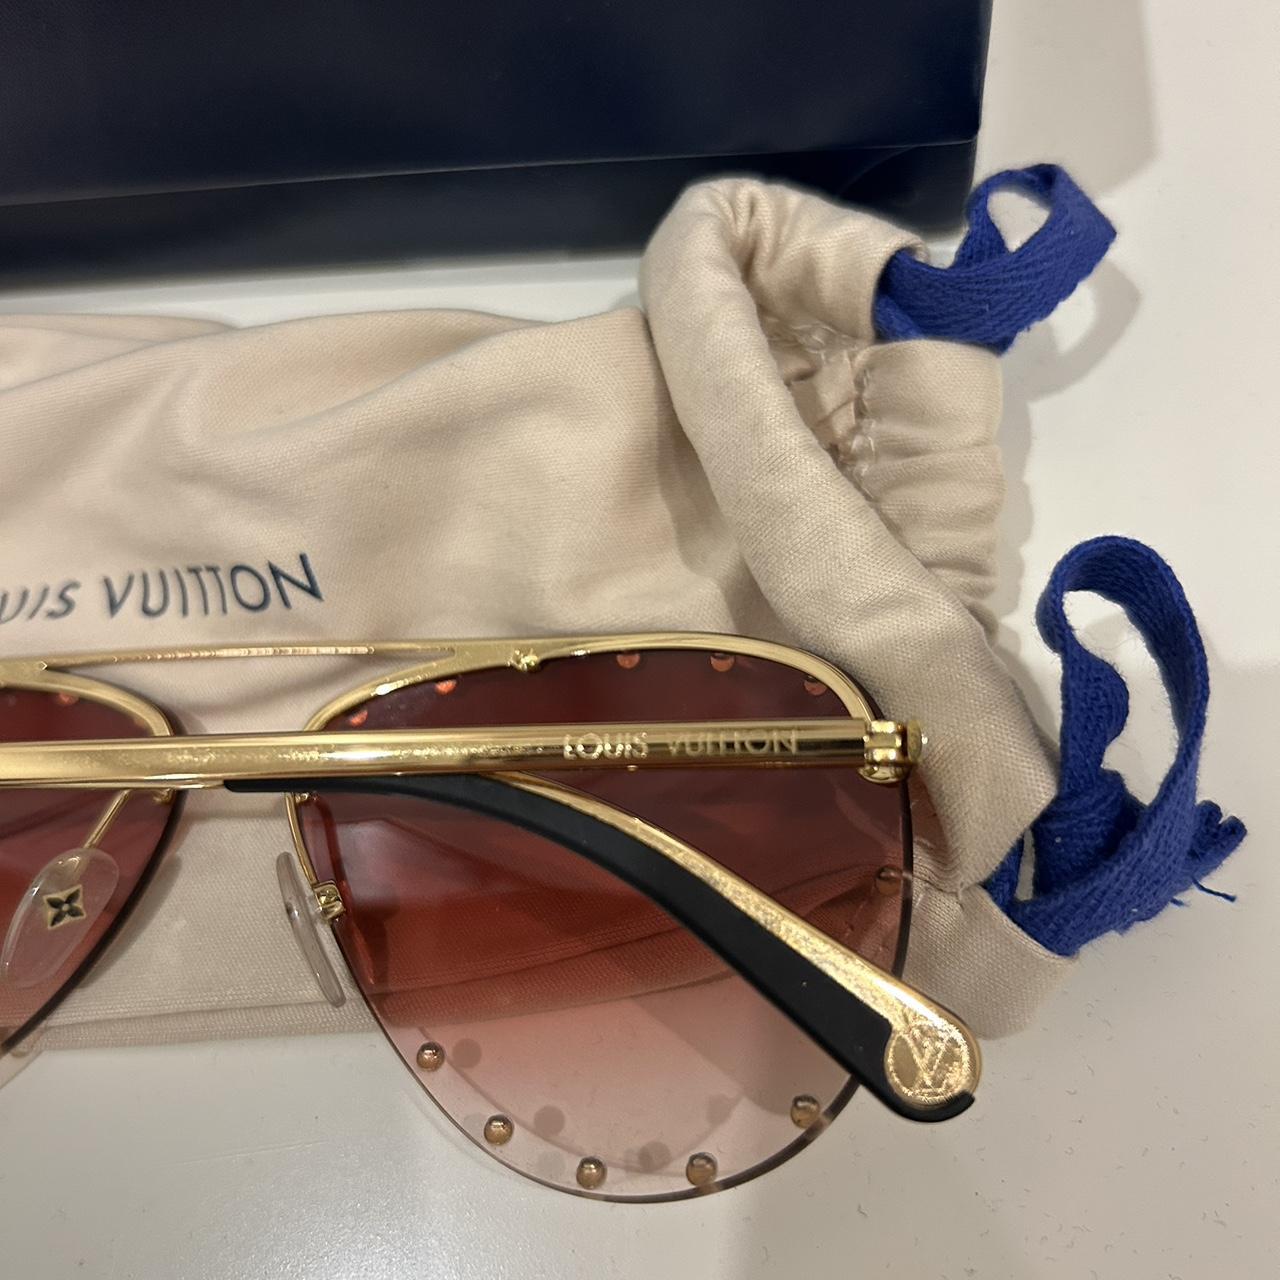 Louis Vuitton beaded pilot sunglasses 100% AUTHENTIC - Depop